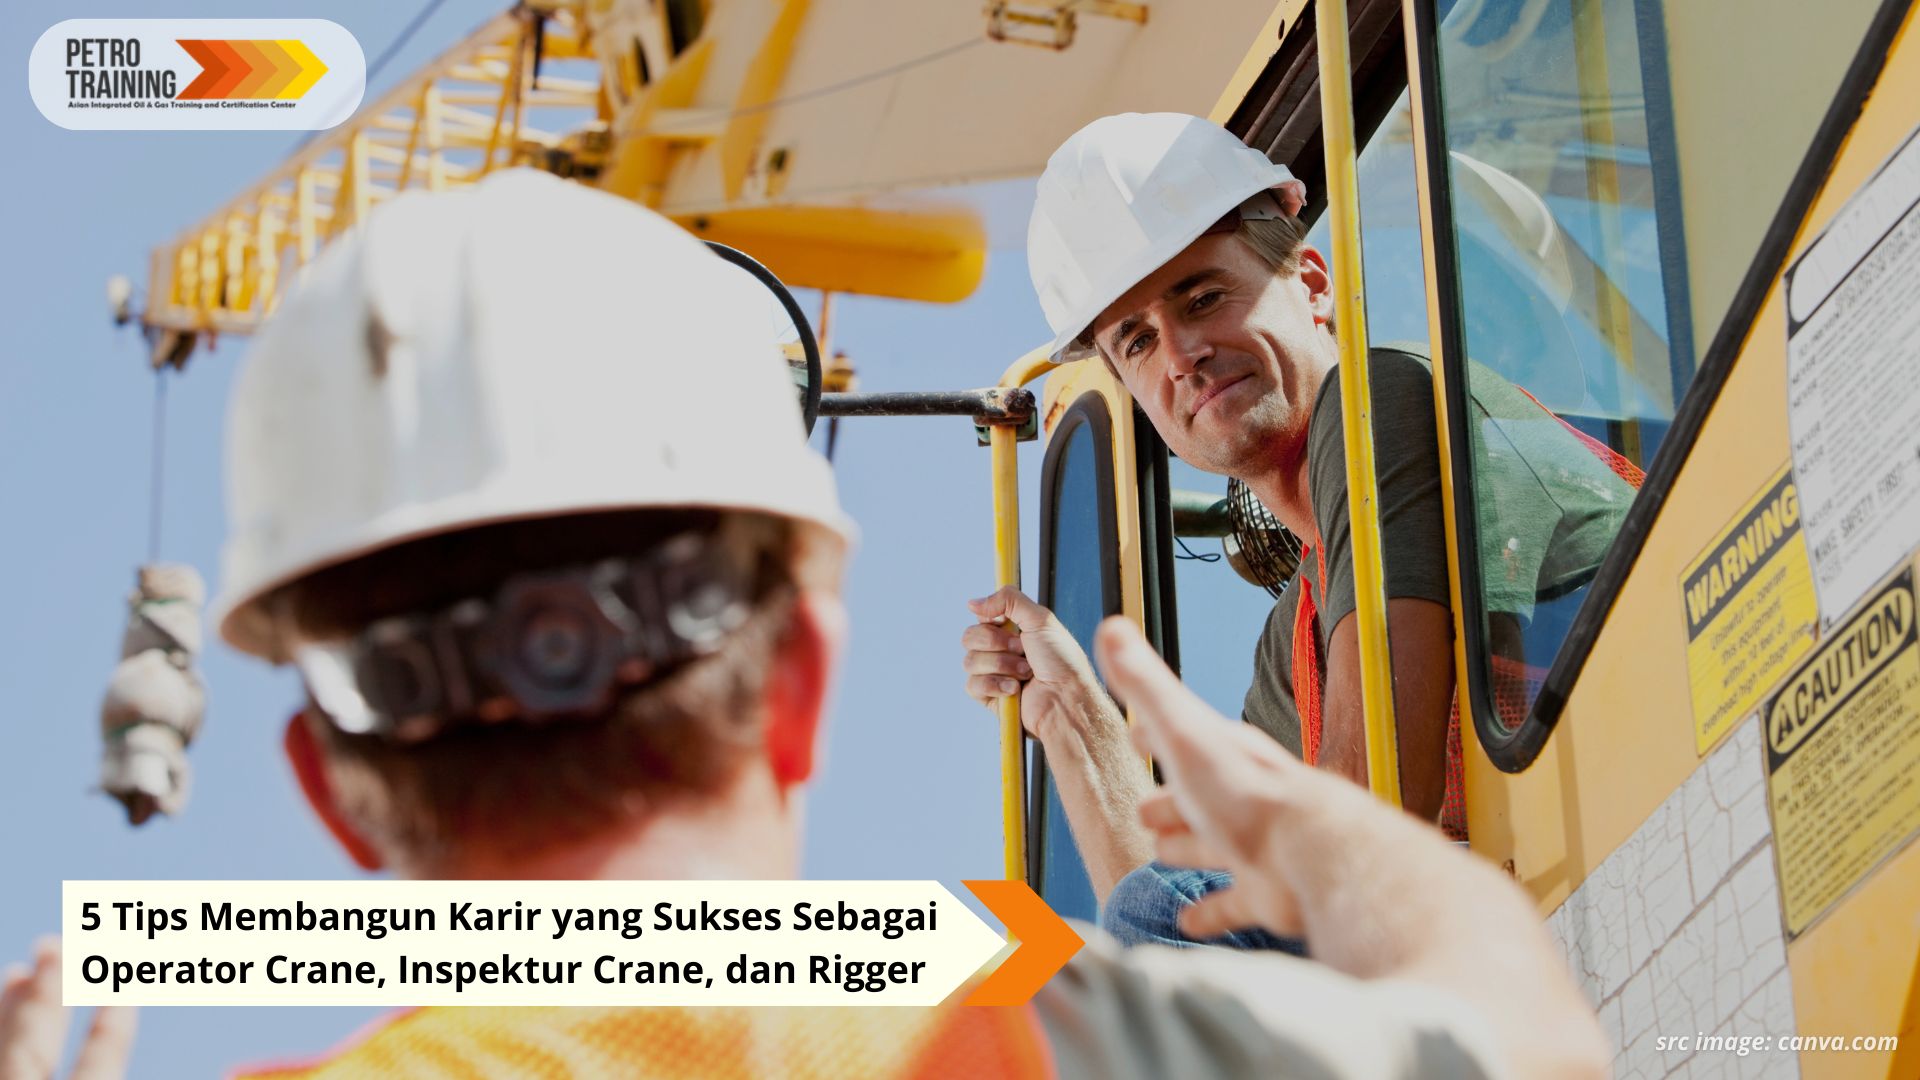 5 Tips Membangun Karir yang Sukses Sebagai Operator Crane, Inspektur Crane, dan Rigger